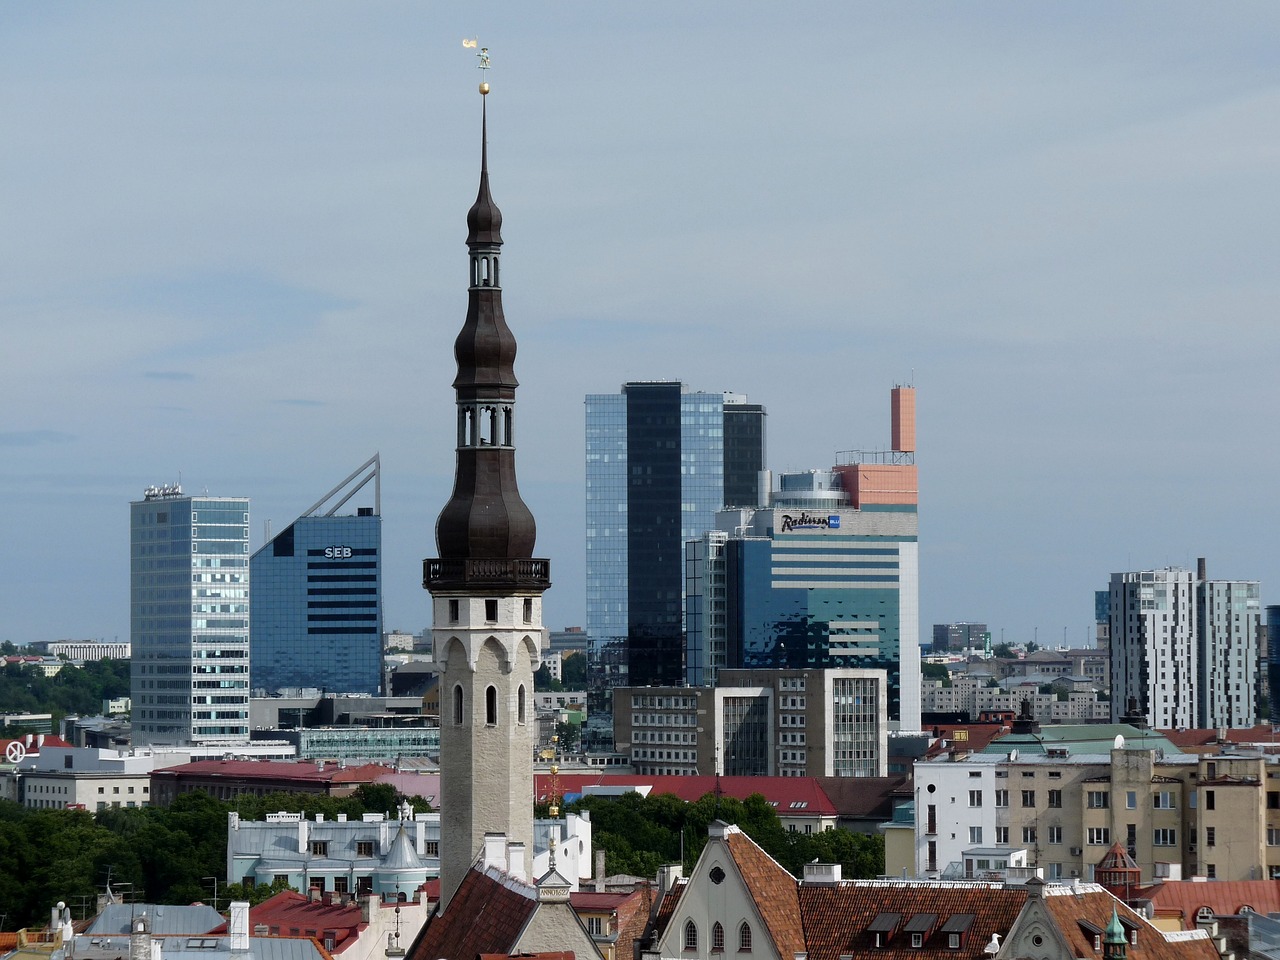 Столиця Естонії - Таллінн - одне з найпопулярніших місць, де іноземці купують нерухомість. Зображення falco із сайту Pixabay